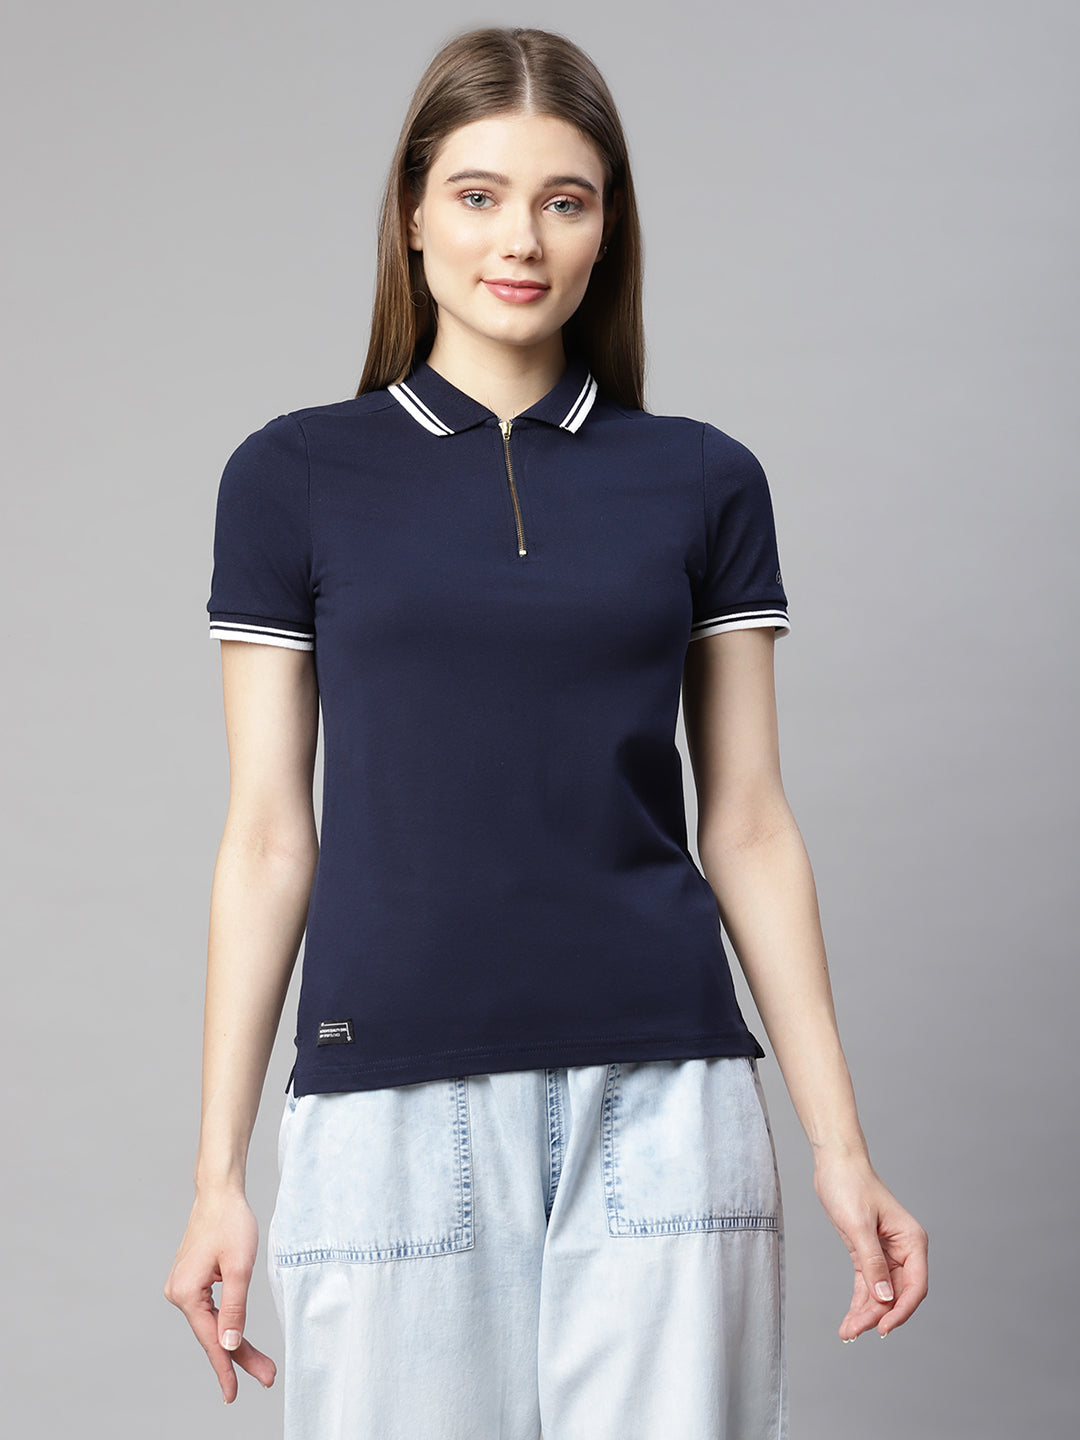 Buy Women Navy Blue Polo T-Shirt - Global Republic